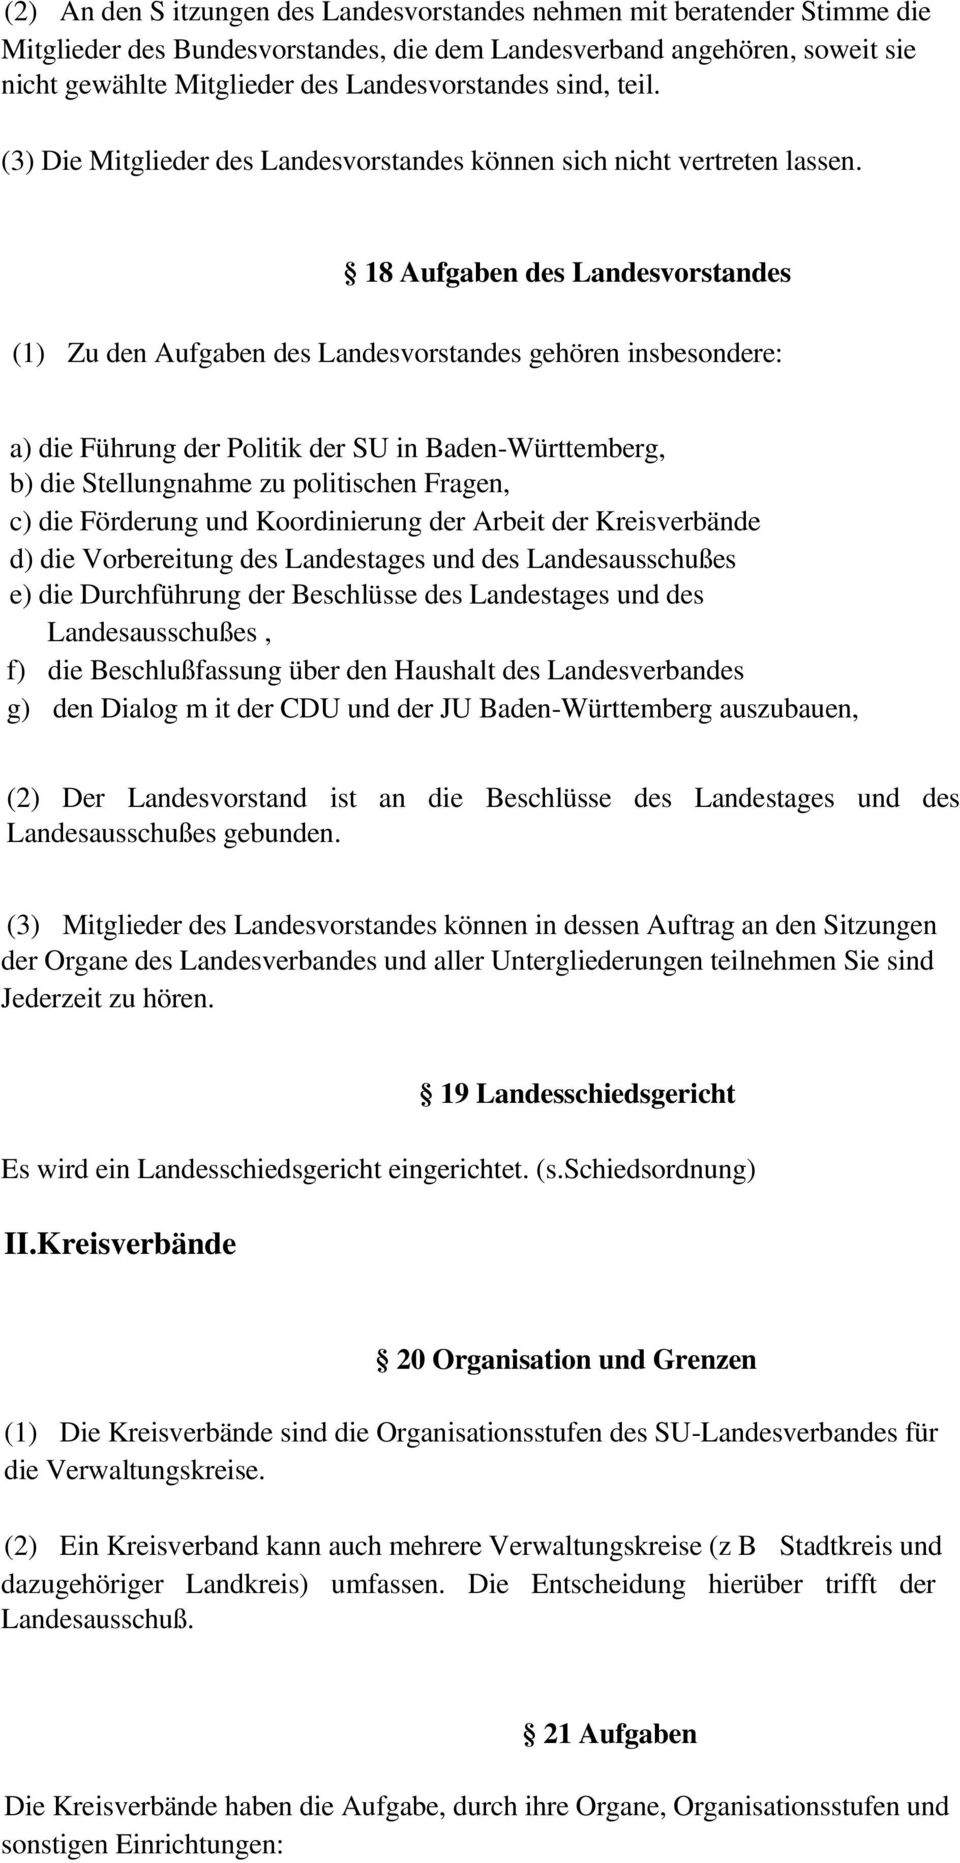 18 Aufgaben des Landesvorstandes (1) Zu den Aufgaben des Landesvorstandes gehören insbesondere: a) die Führung der Politik der SU in Baden-Württemberg, b) die Stellungnahme zu politischen Fragen, c)